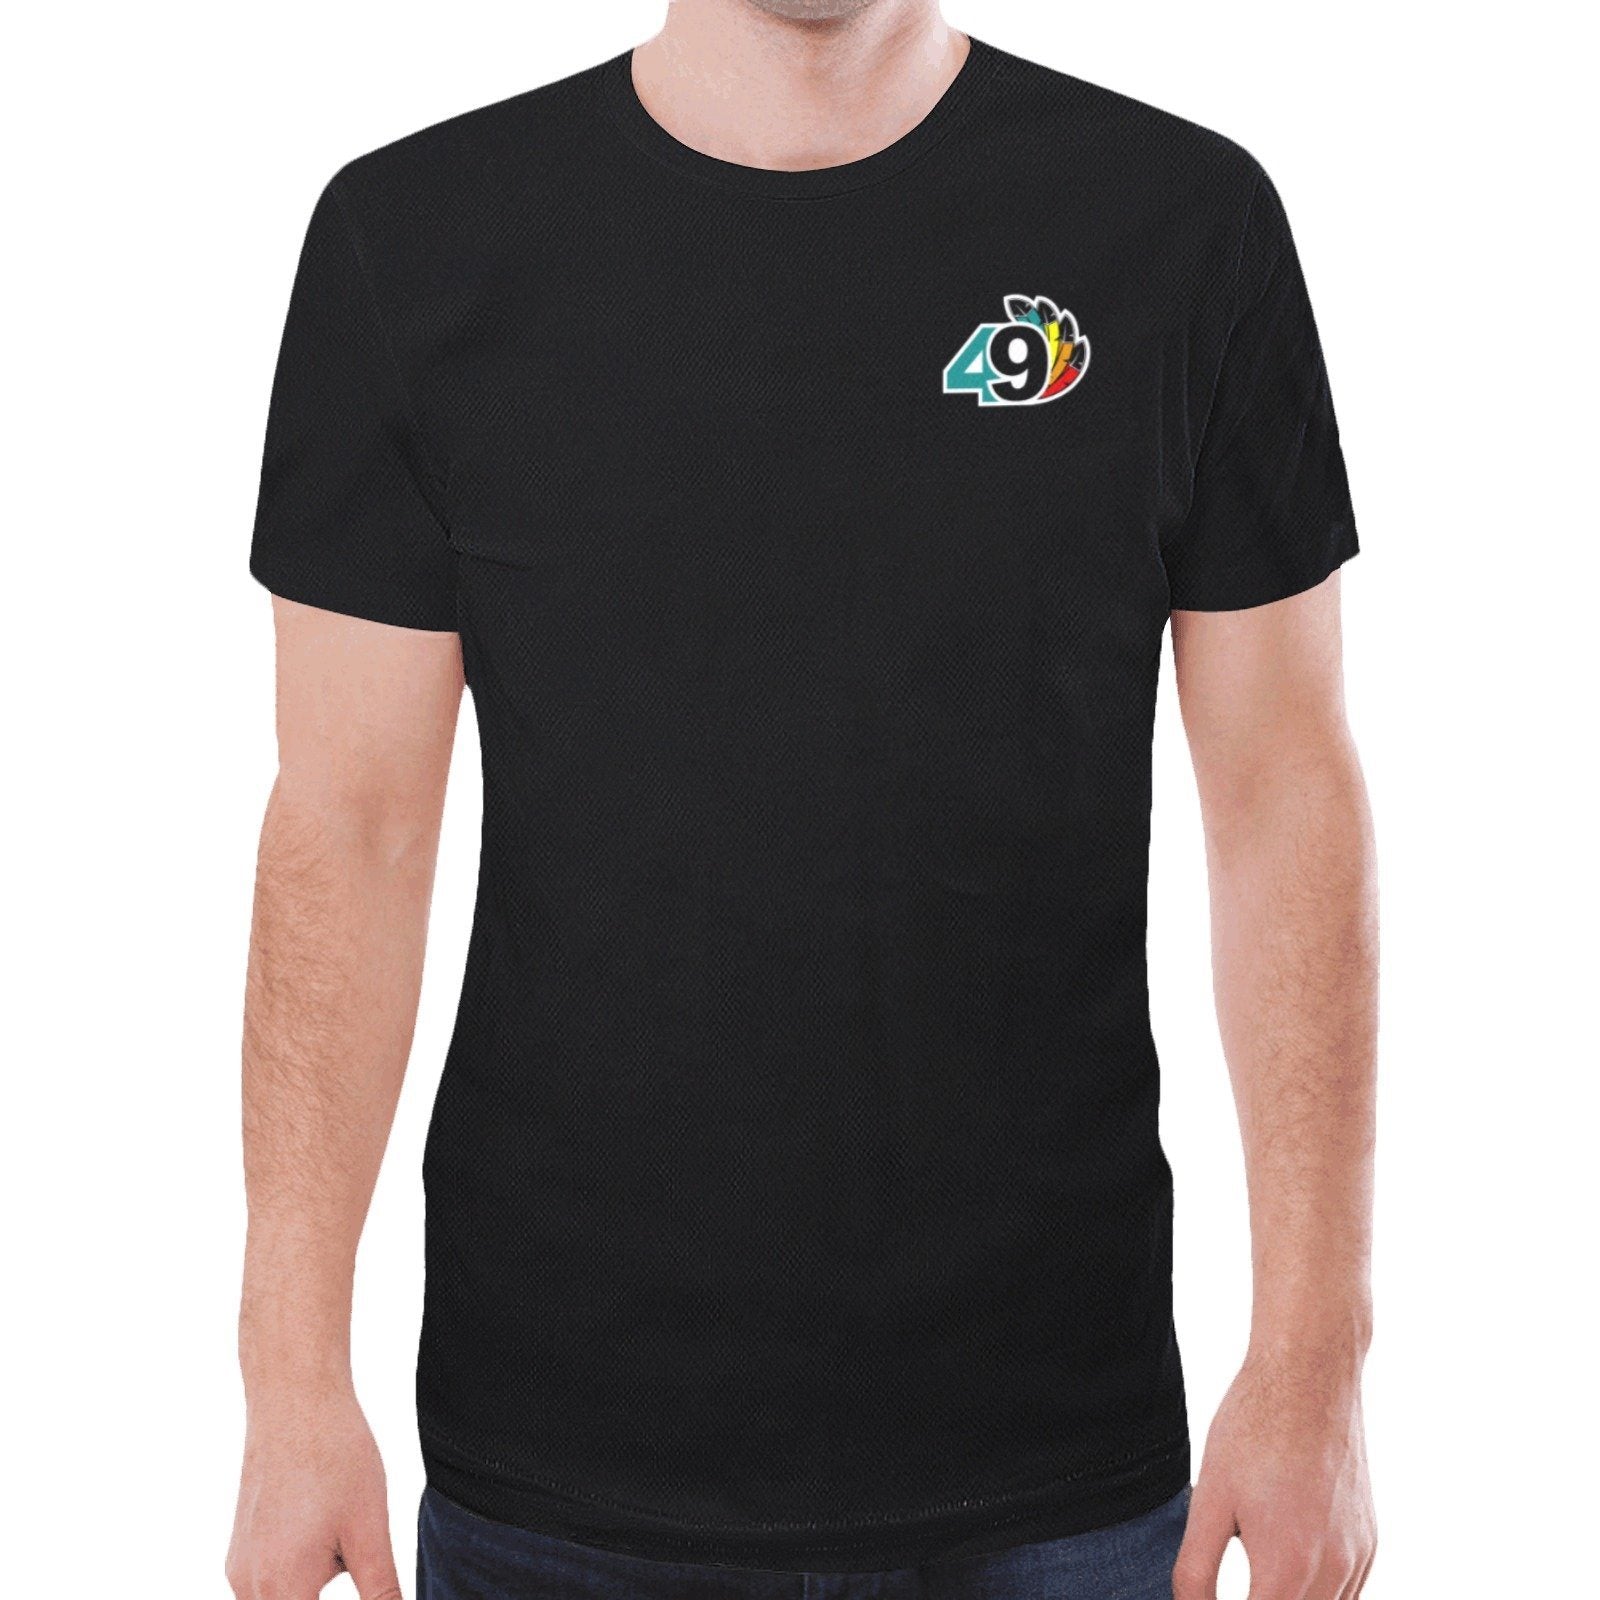 49 Dzine Logomark Dress Code New All Over Print T-shirt for Men (Model T45) New All Over Print T-shirt for Men (T45) e-joyer 